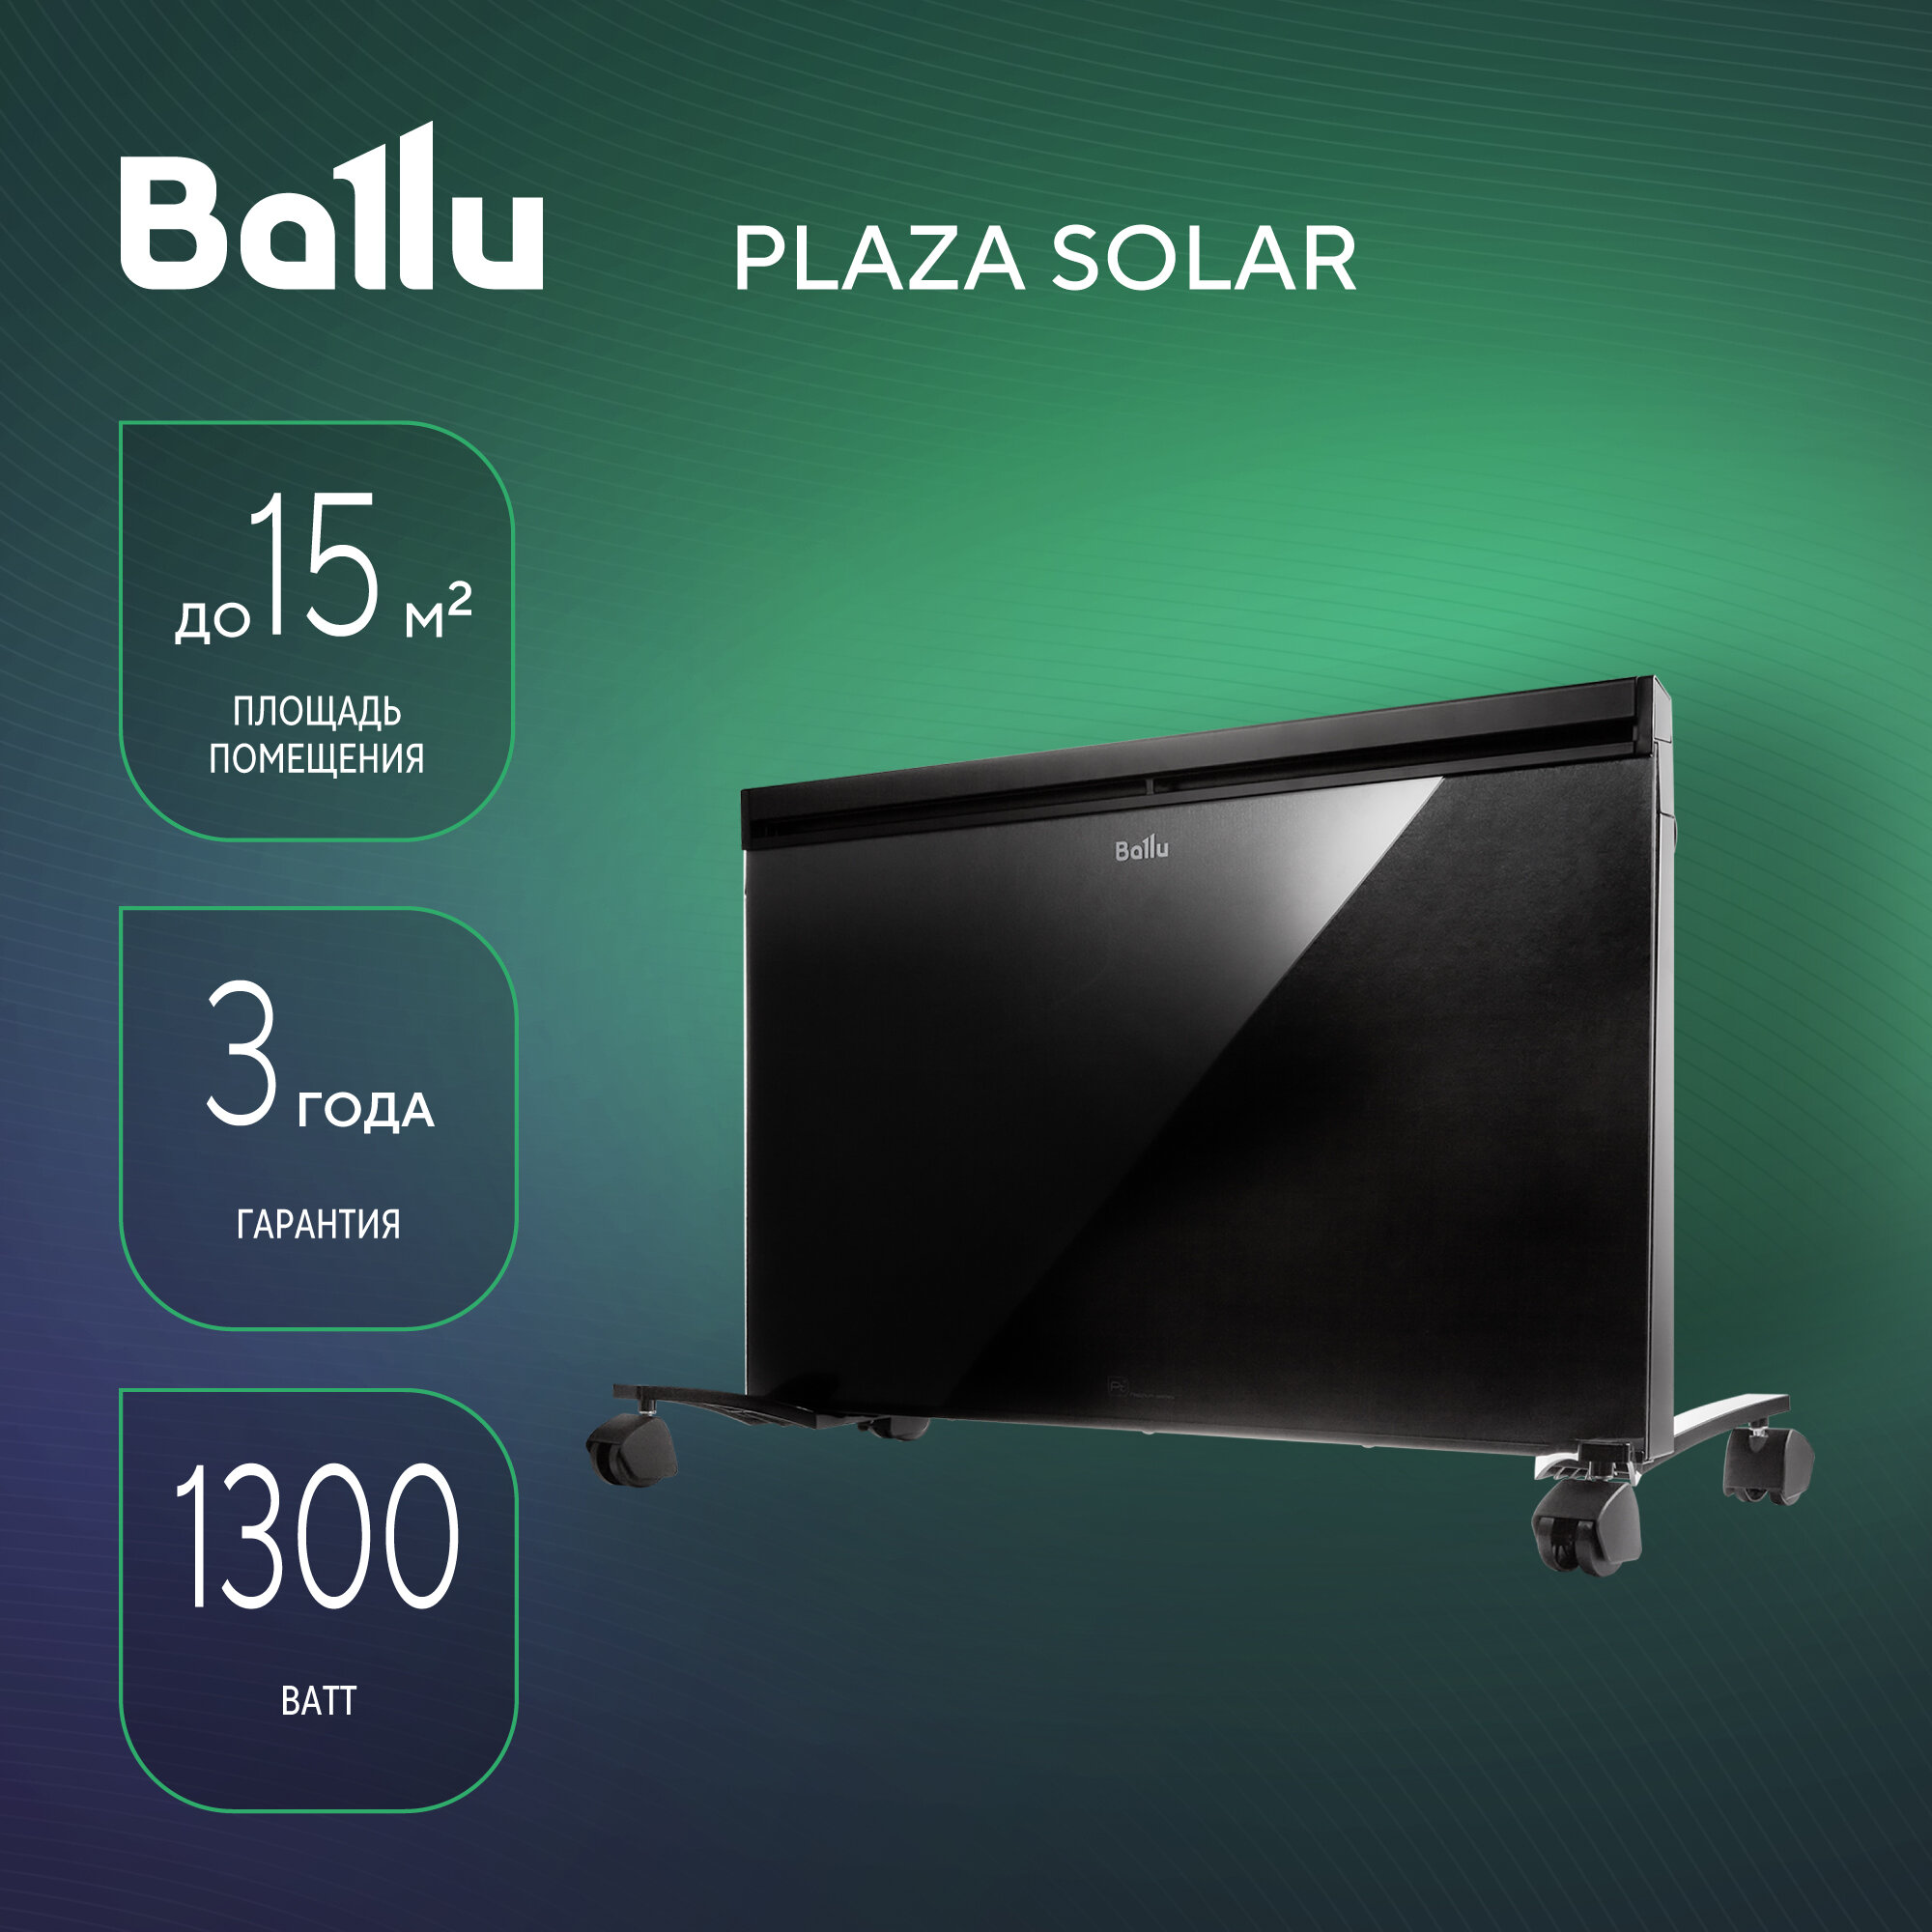 Инфракрасно-конвективный обогреватель Ballu Plaza Solar BIHP/S-1300, черный